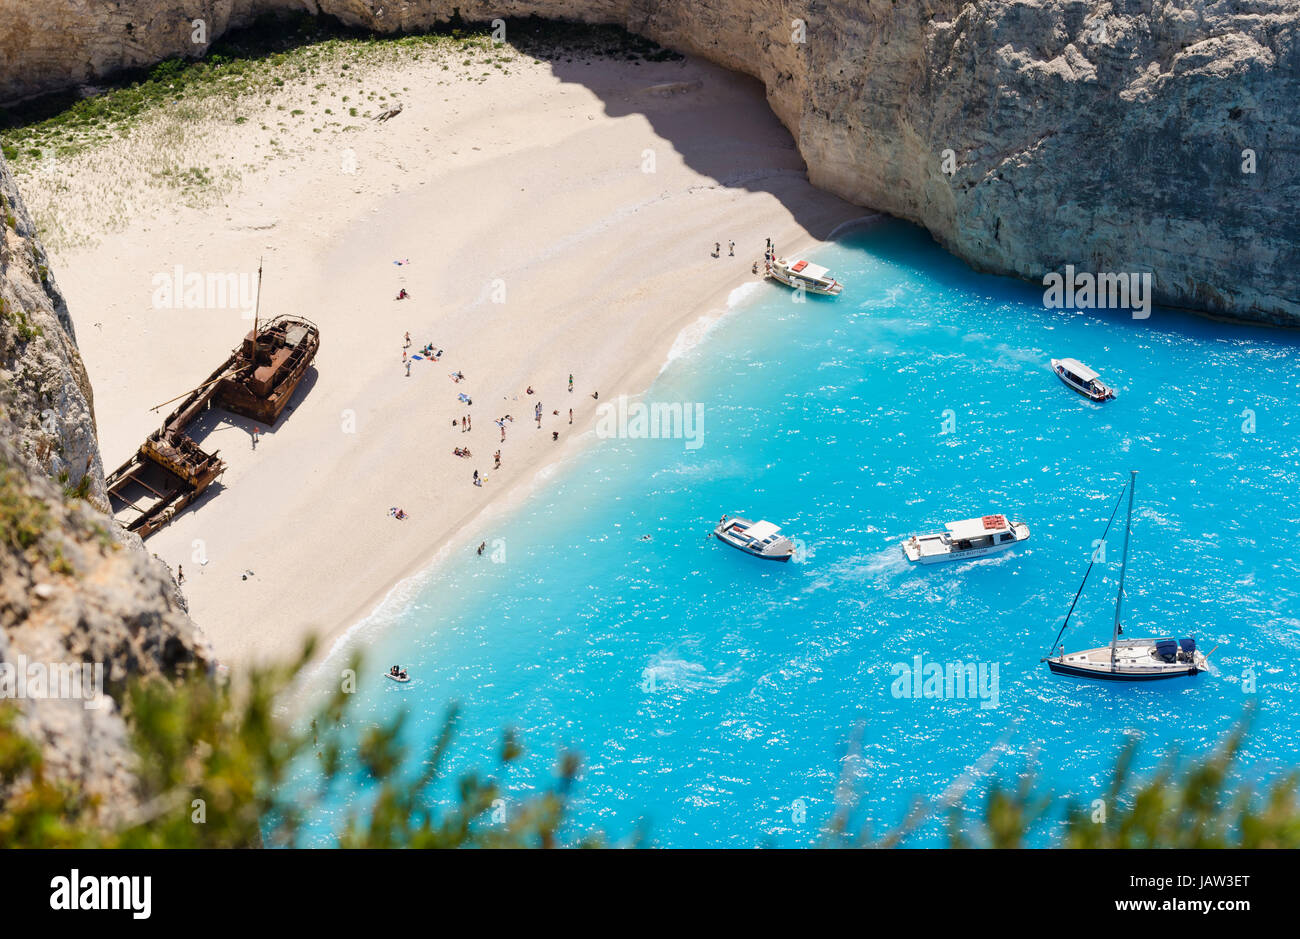 Navagio Beach or Shipwreck Beach, Zakynthos, Greece Stock Photo - Alamy